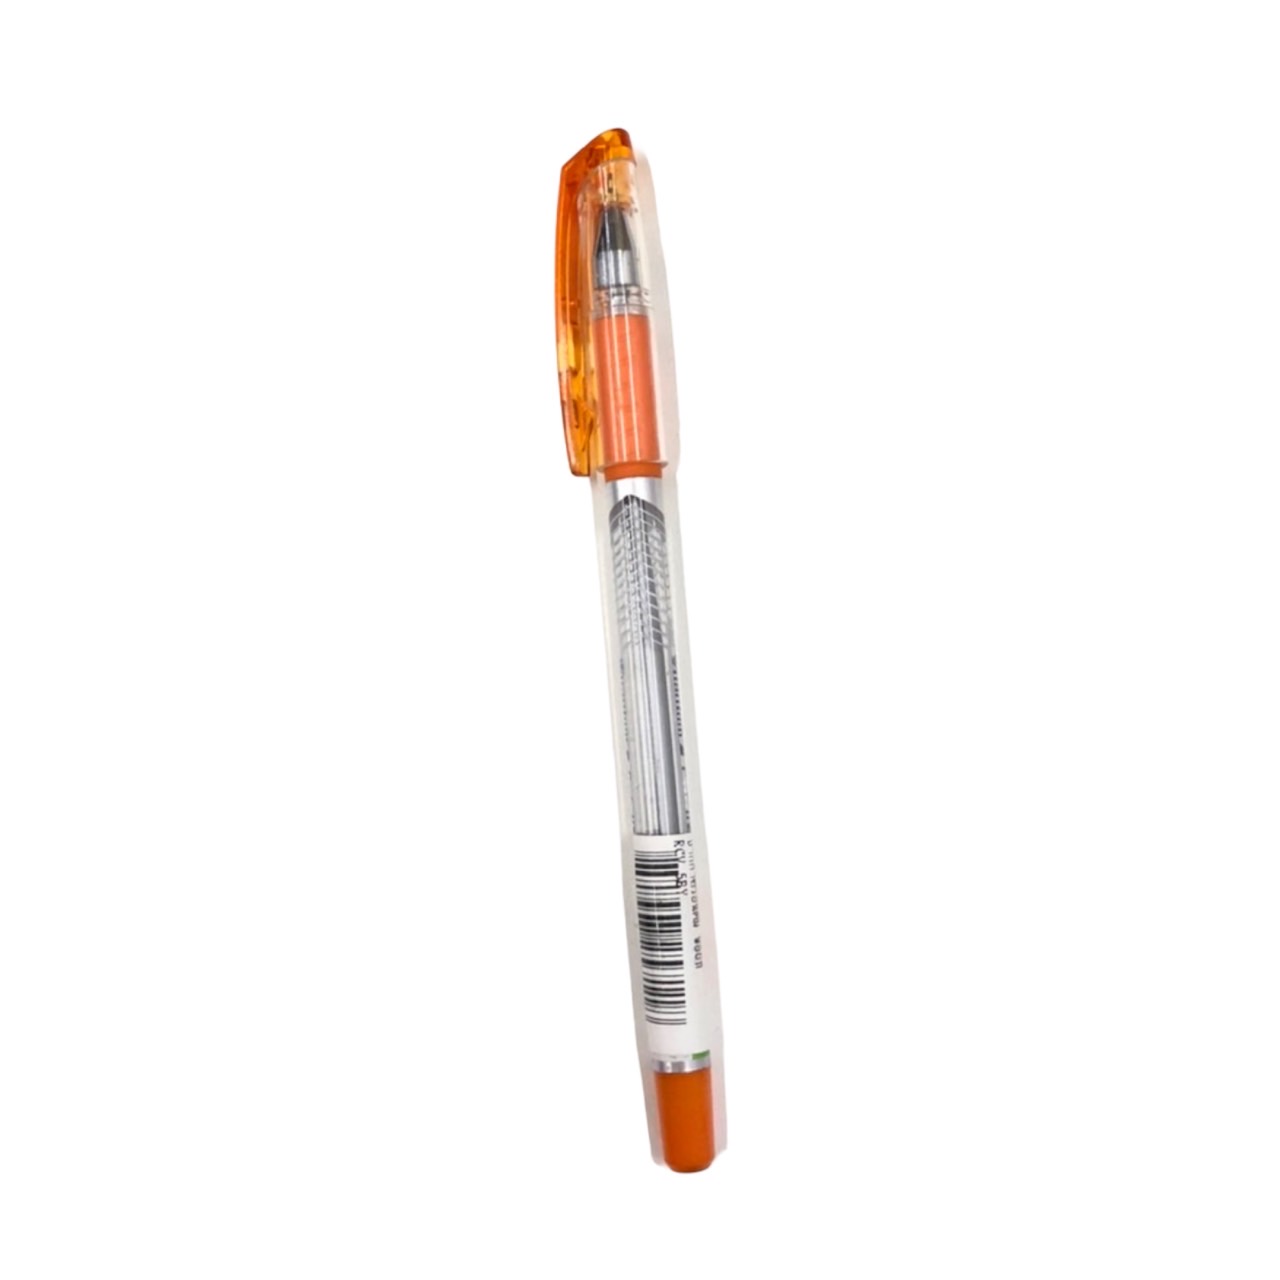 ปากกาควอนตั้ม พ้อยท์ 0.38 สีน้ำเงิน